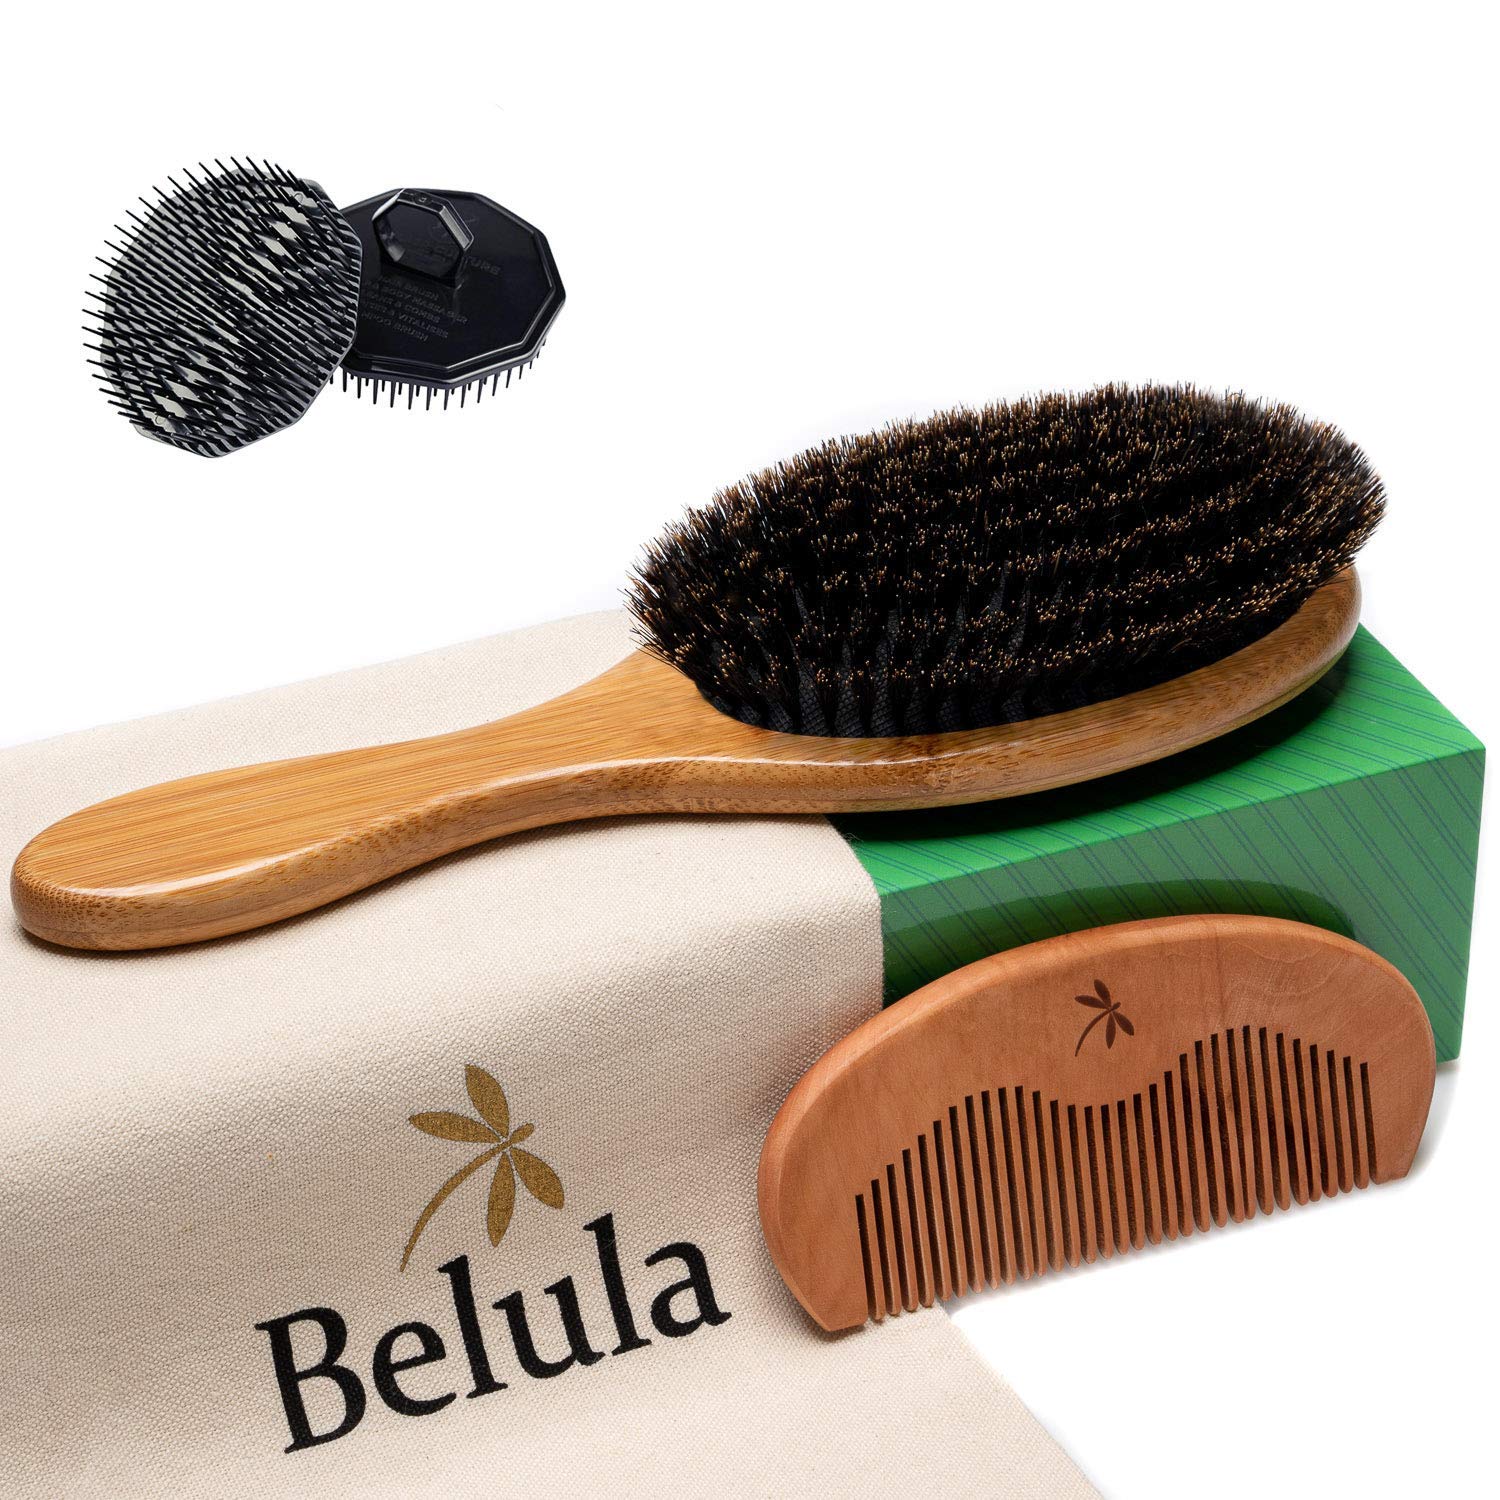 Belula 100% Boar Bristle Hair Brush for Men Set. Soft Hairbrush